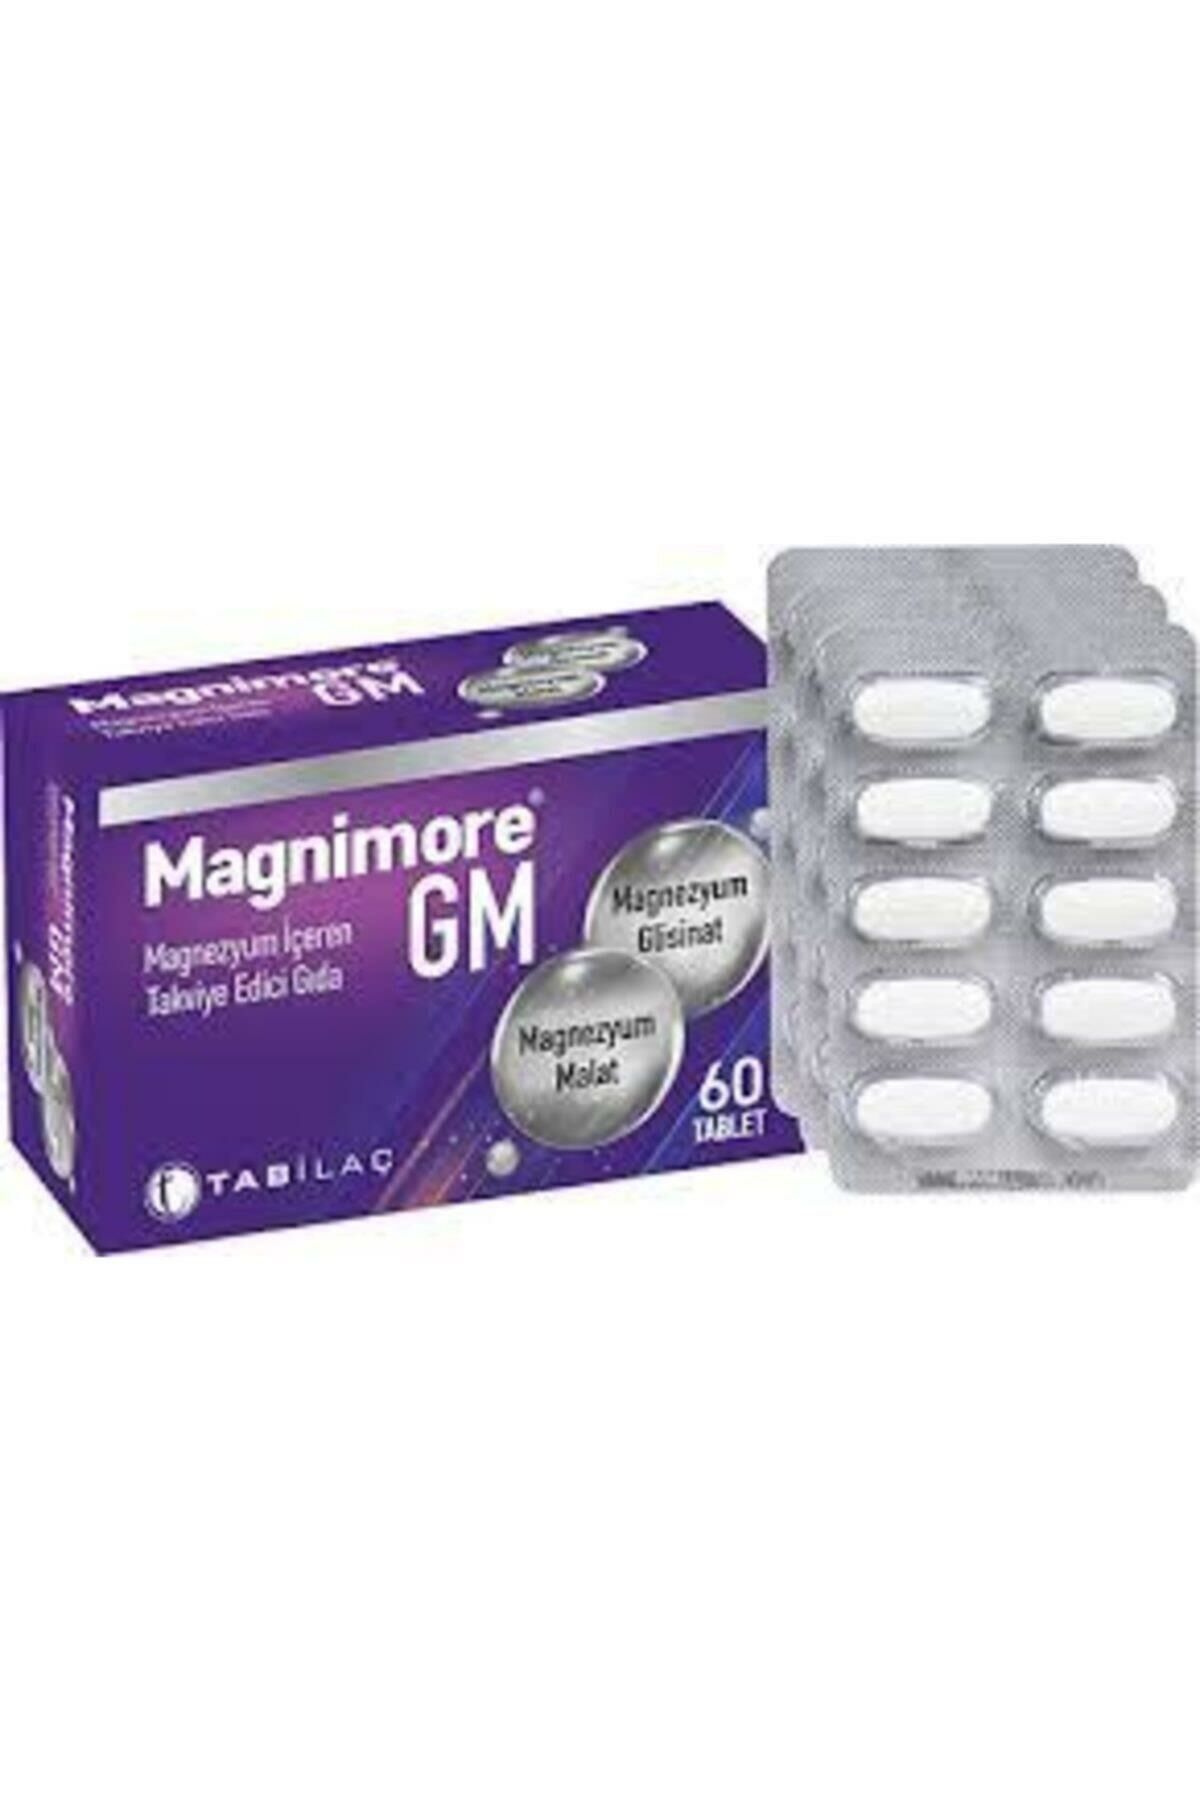 Magnimore GM 60 Tablet-Takviye Edici Gıda